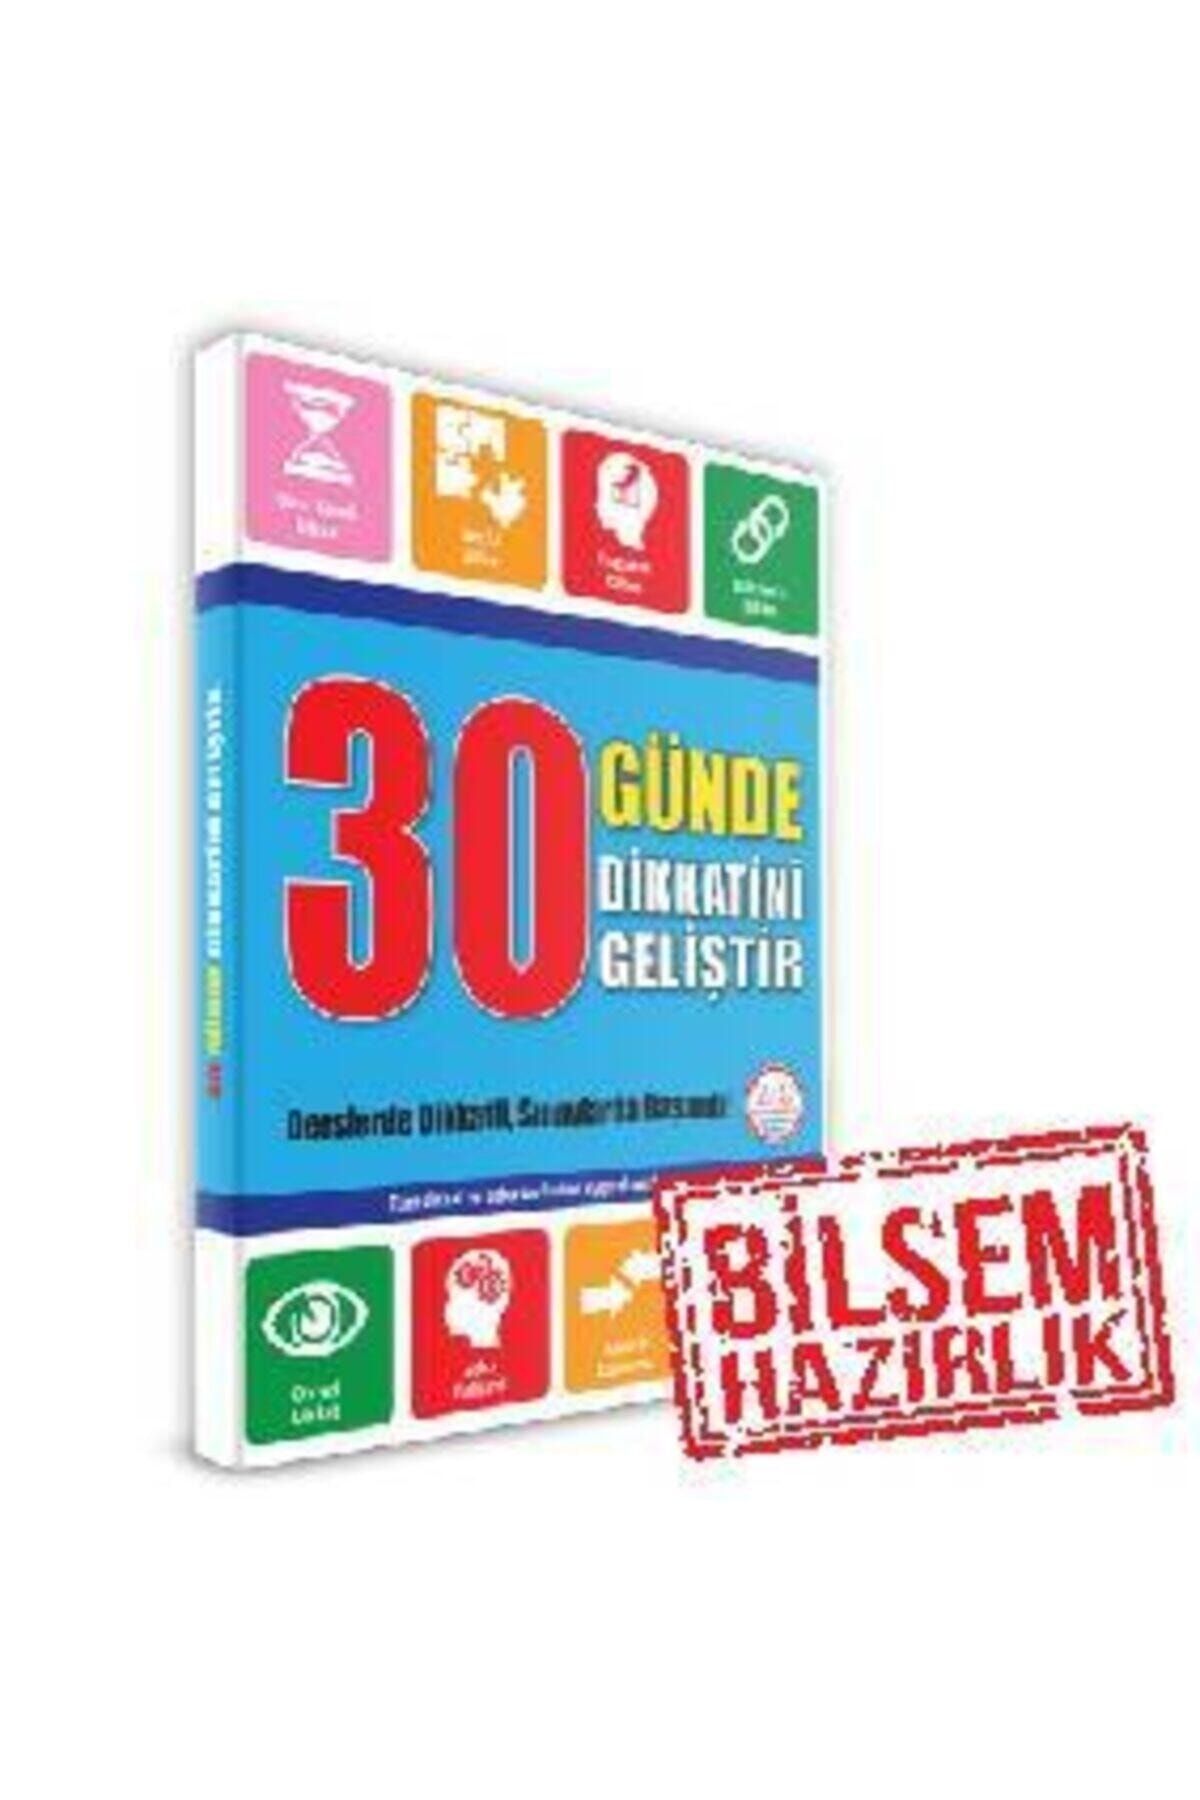 Yükselen Zeka Yayınları 8+ Yaş 30 Günde Dikkatini Geliştir Kitabı Bilsem Hazırlık